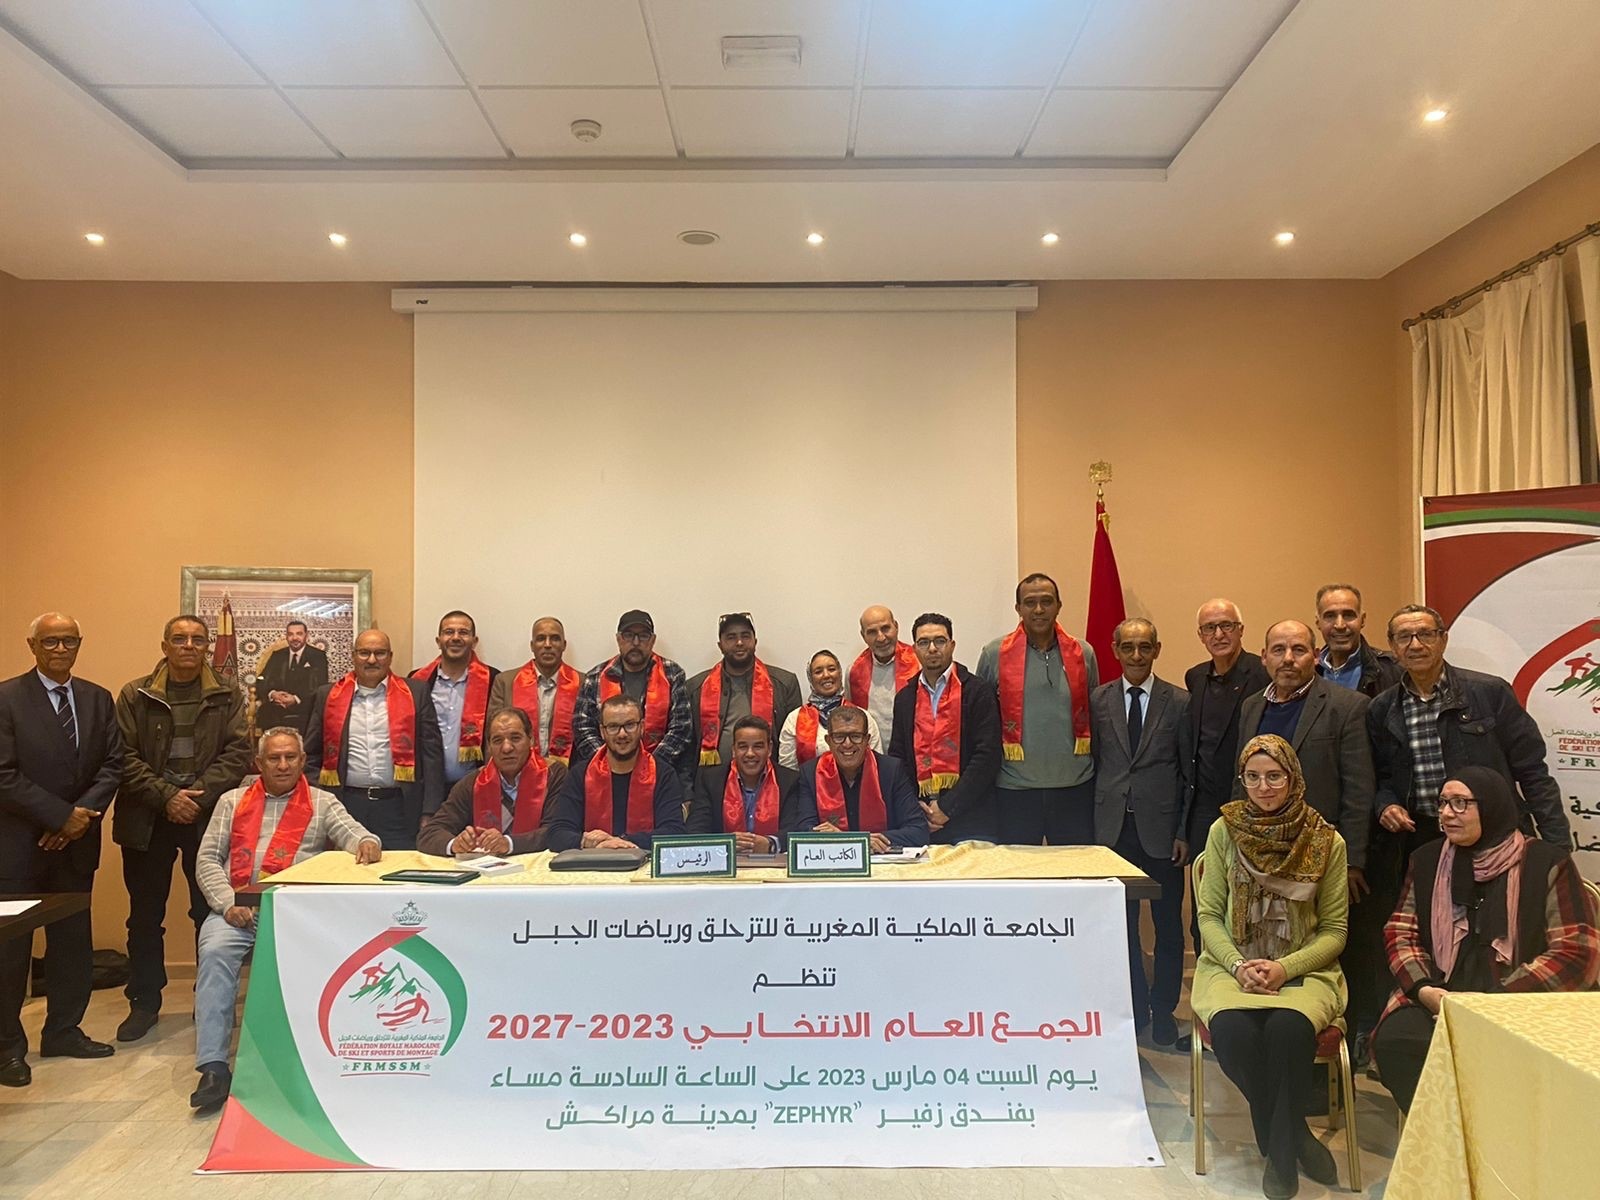 انتخاب نور الدين بوشعال رئيسا للجامعة الملكية المغربية للتزحلق ورياضات الجبل